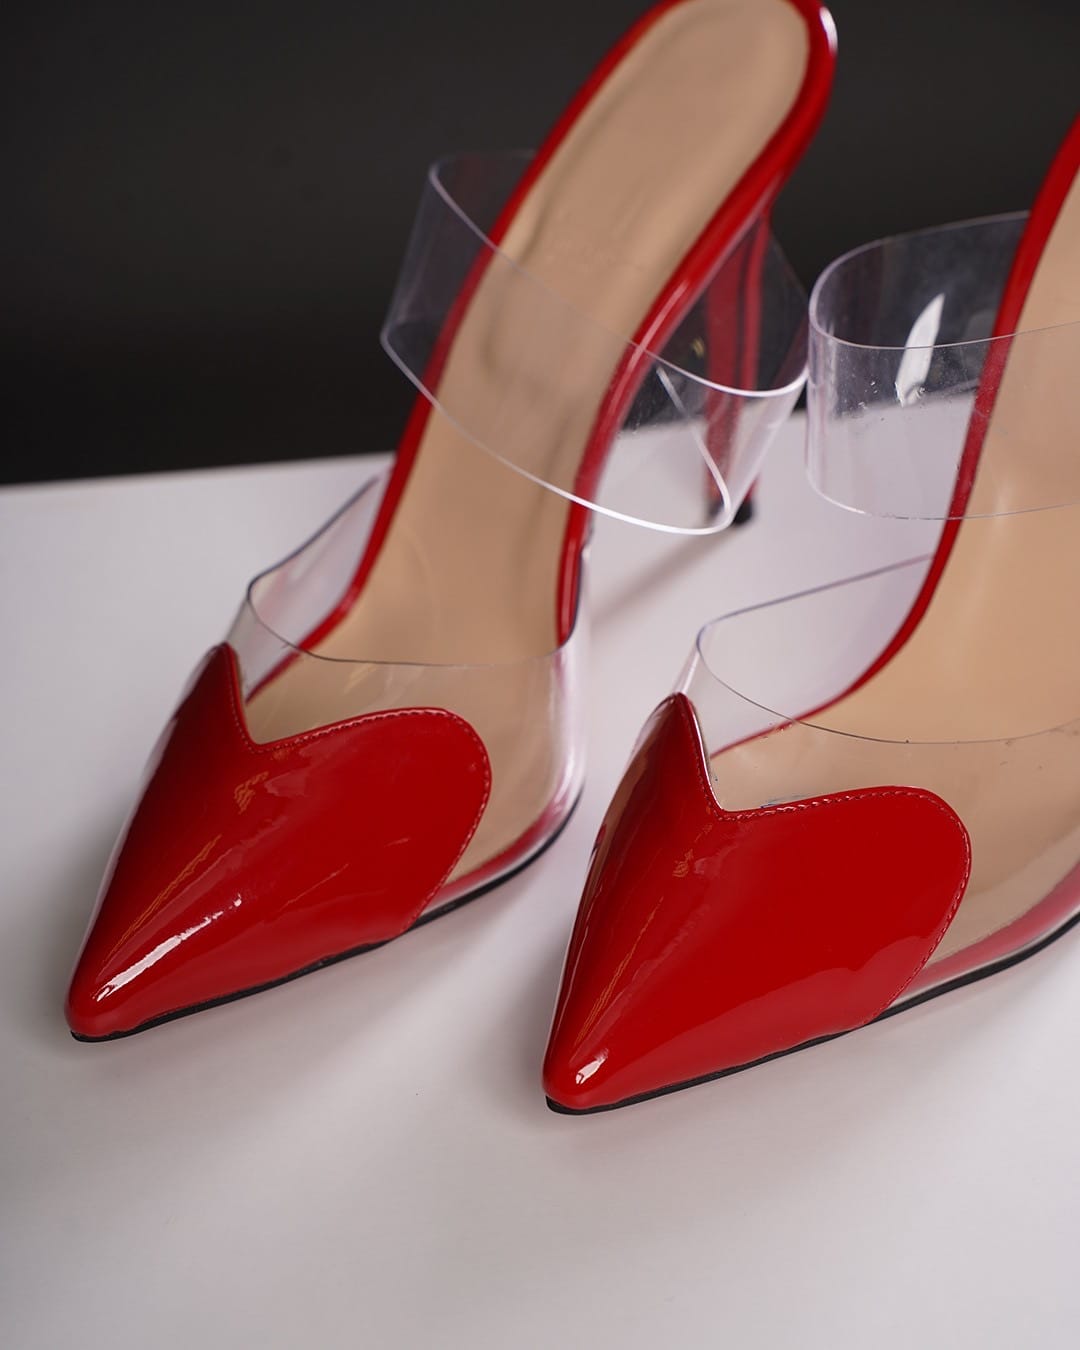 Дамски обувки LOVE HEART  червен лак  с ток 10 см.